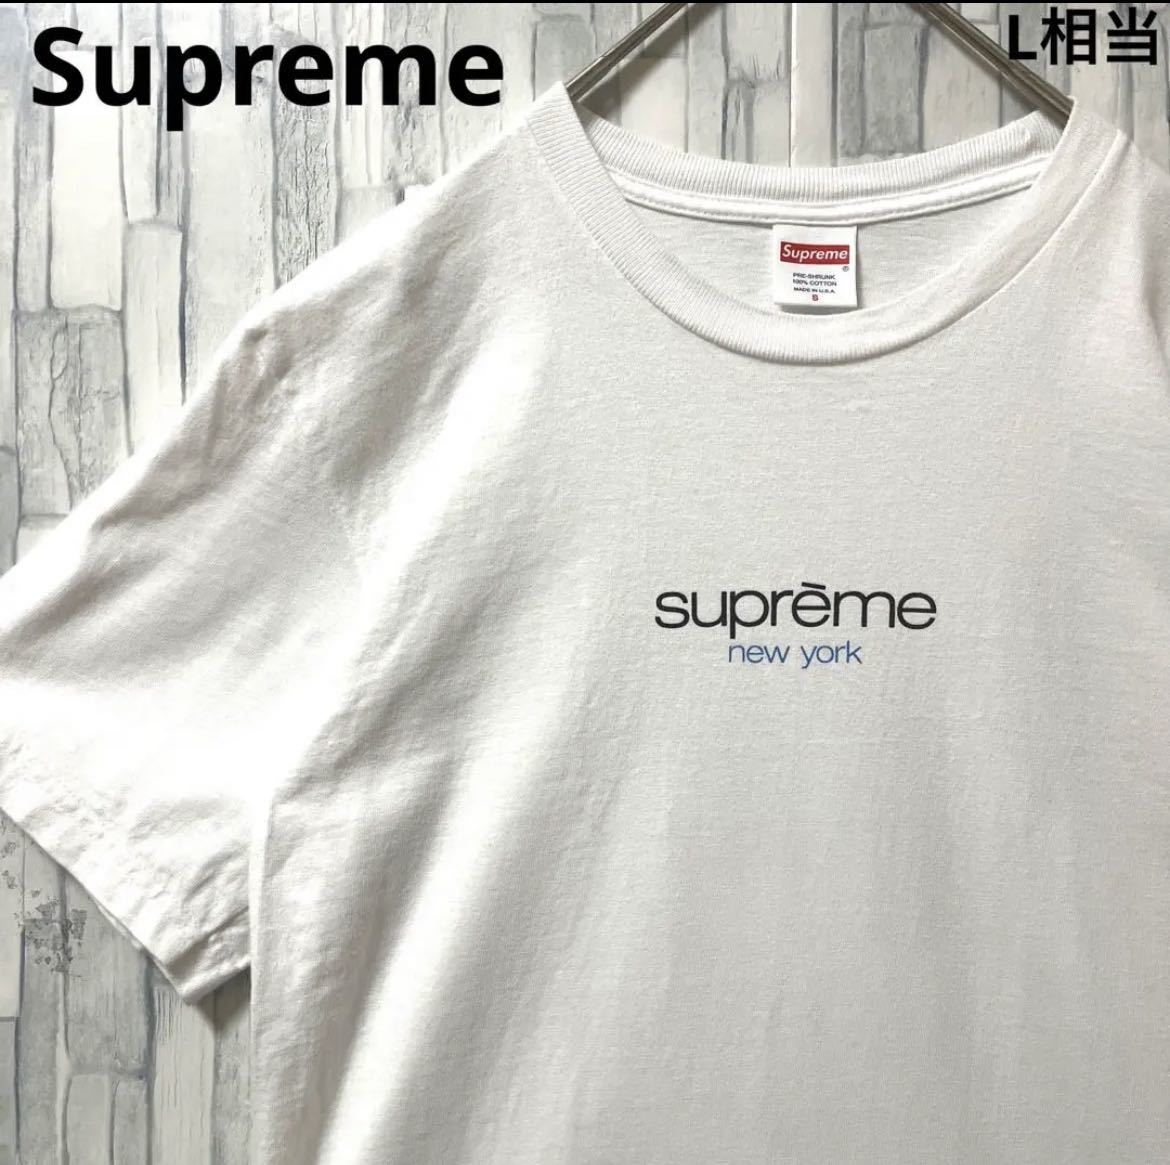 Supreme シュプリーム ニューヨーク デカロゴ ビッグロゴ 半袖 Tシャツ サイズS USA製 送料無料